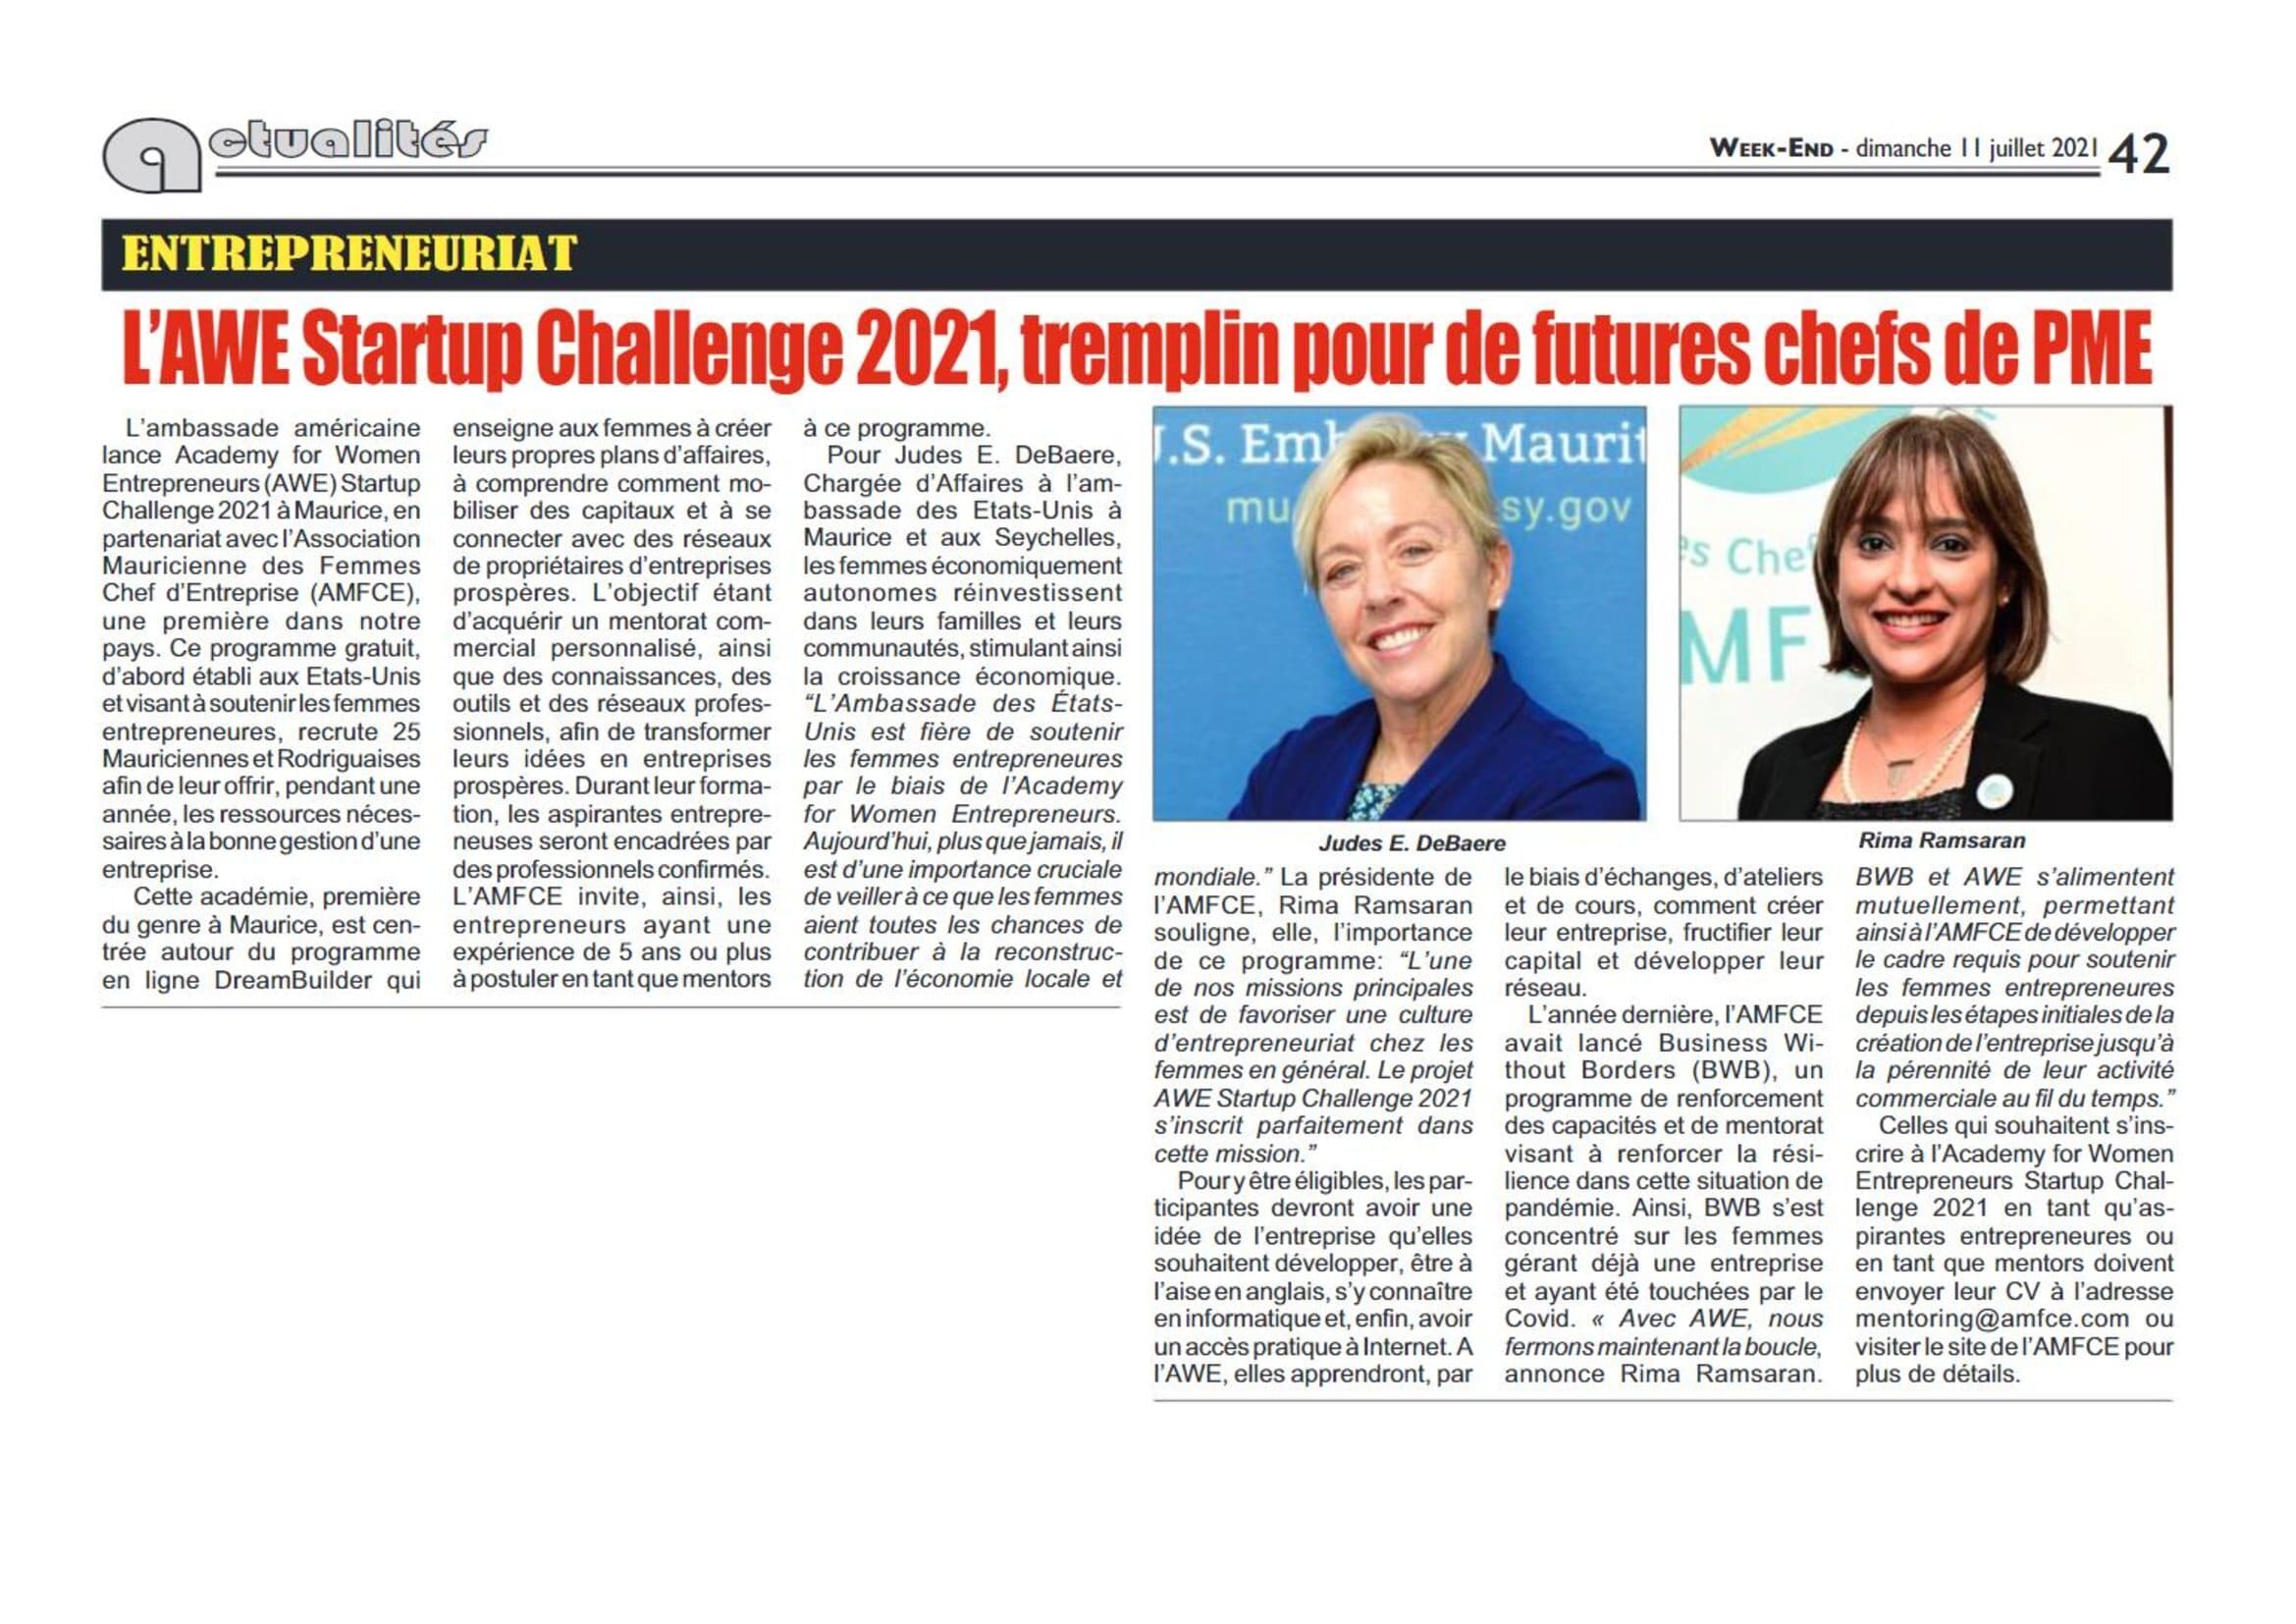 Week End 11.07.21-Entrepreneuriat-L’AWE Startup challenge 2021, tremplin pour les futures chefs des PME